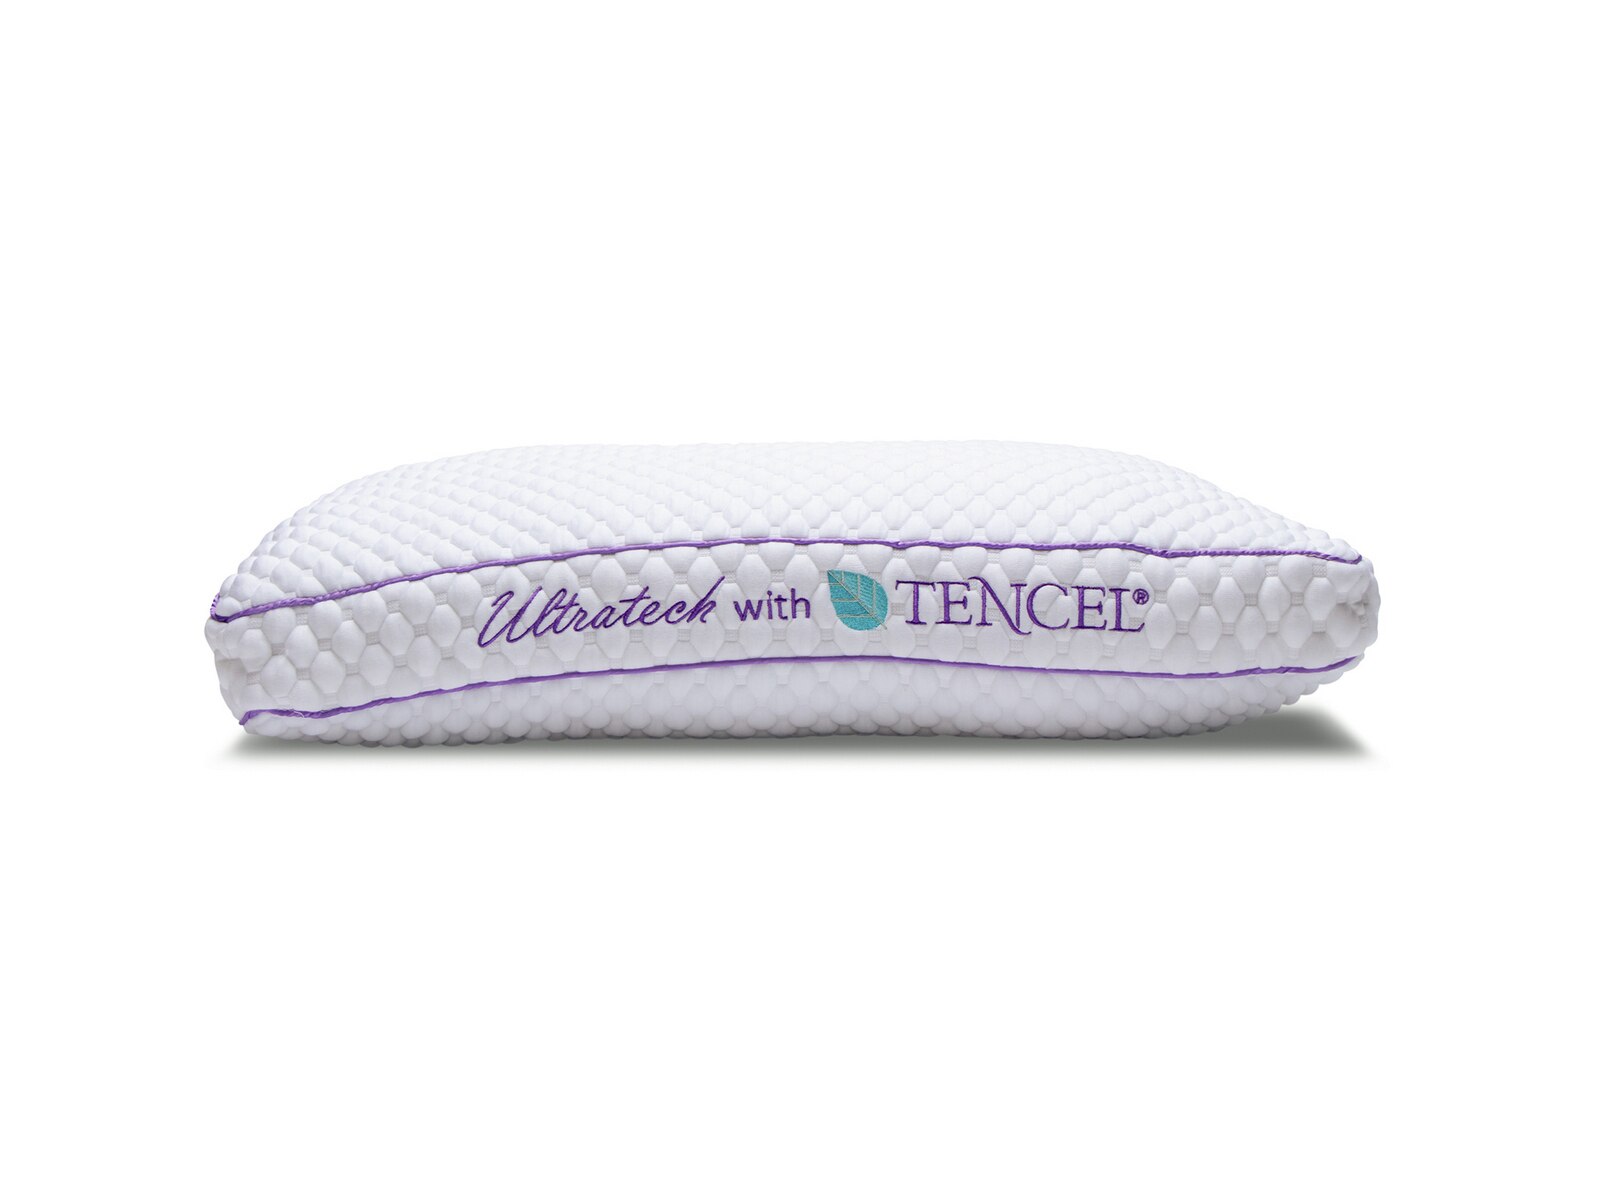 tencel pillow top mattress reviews